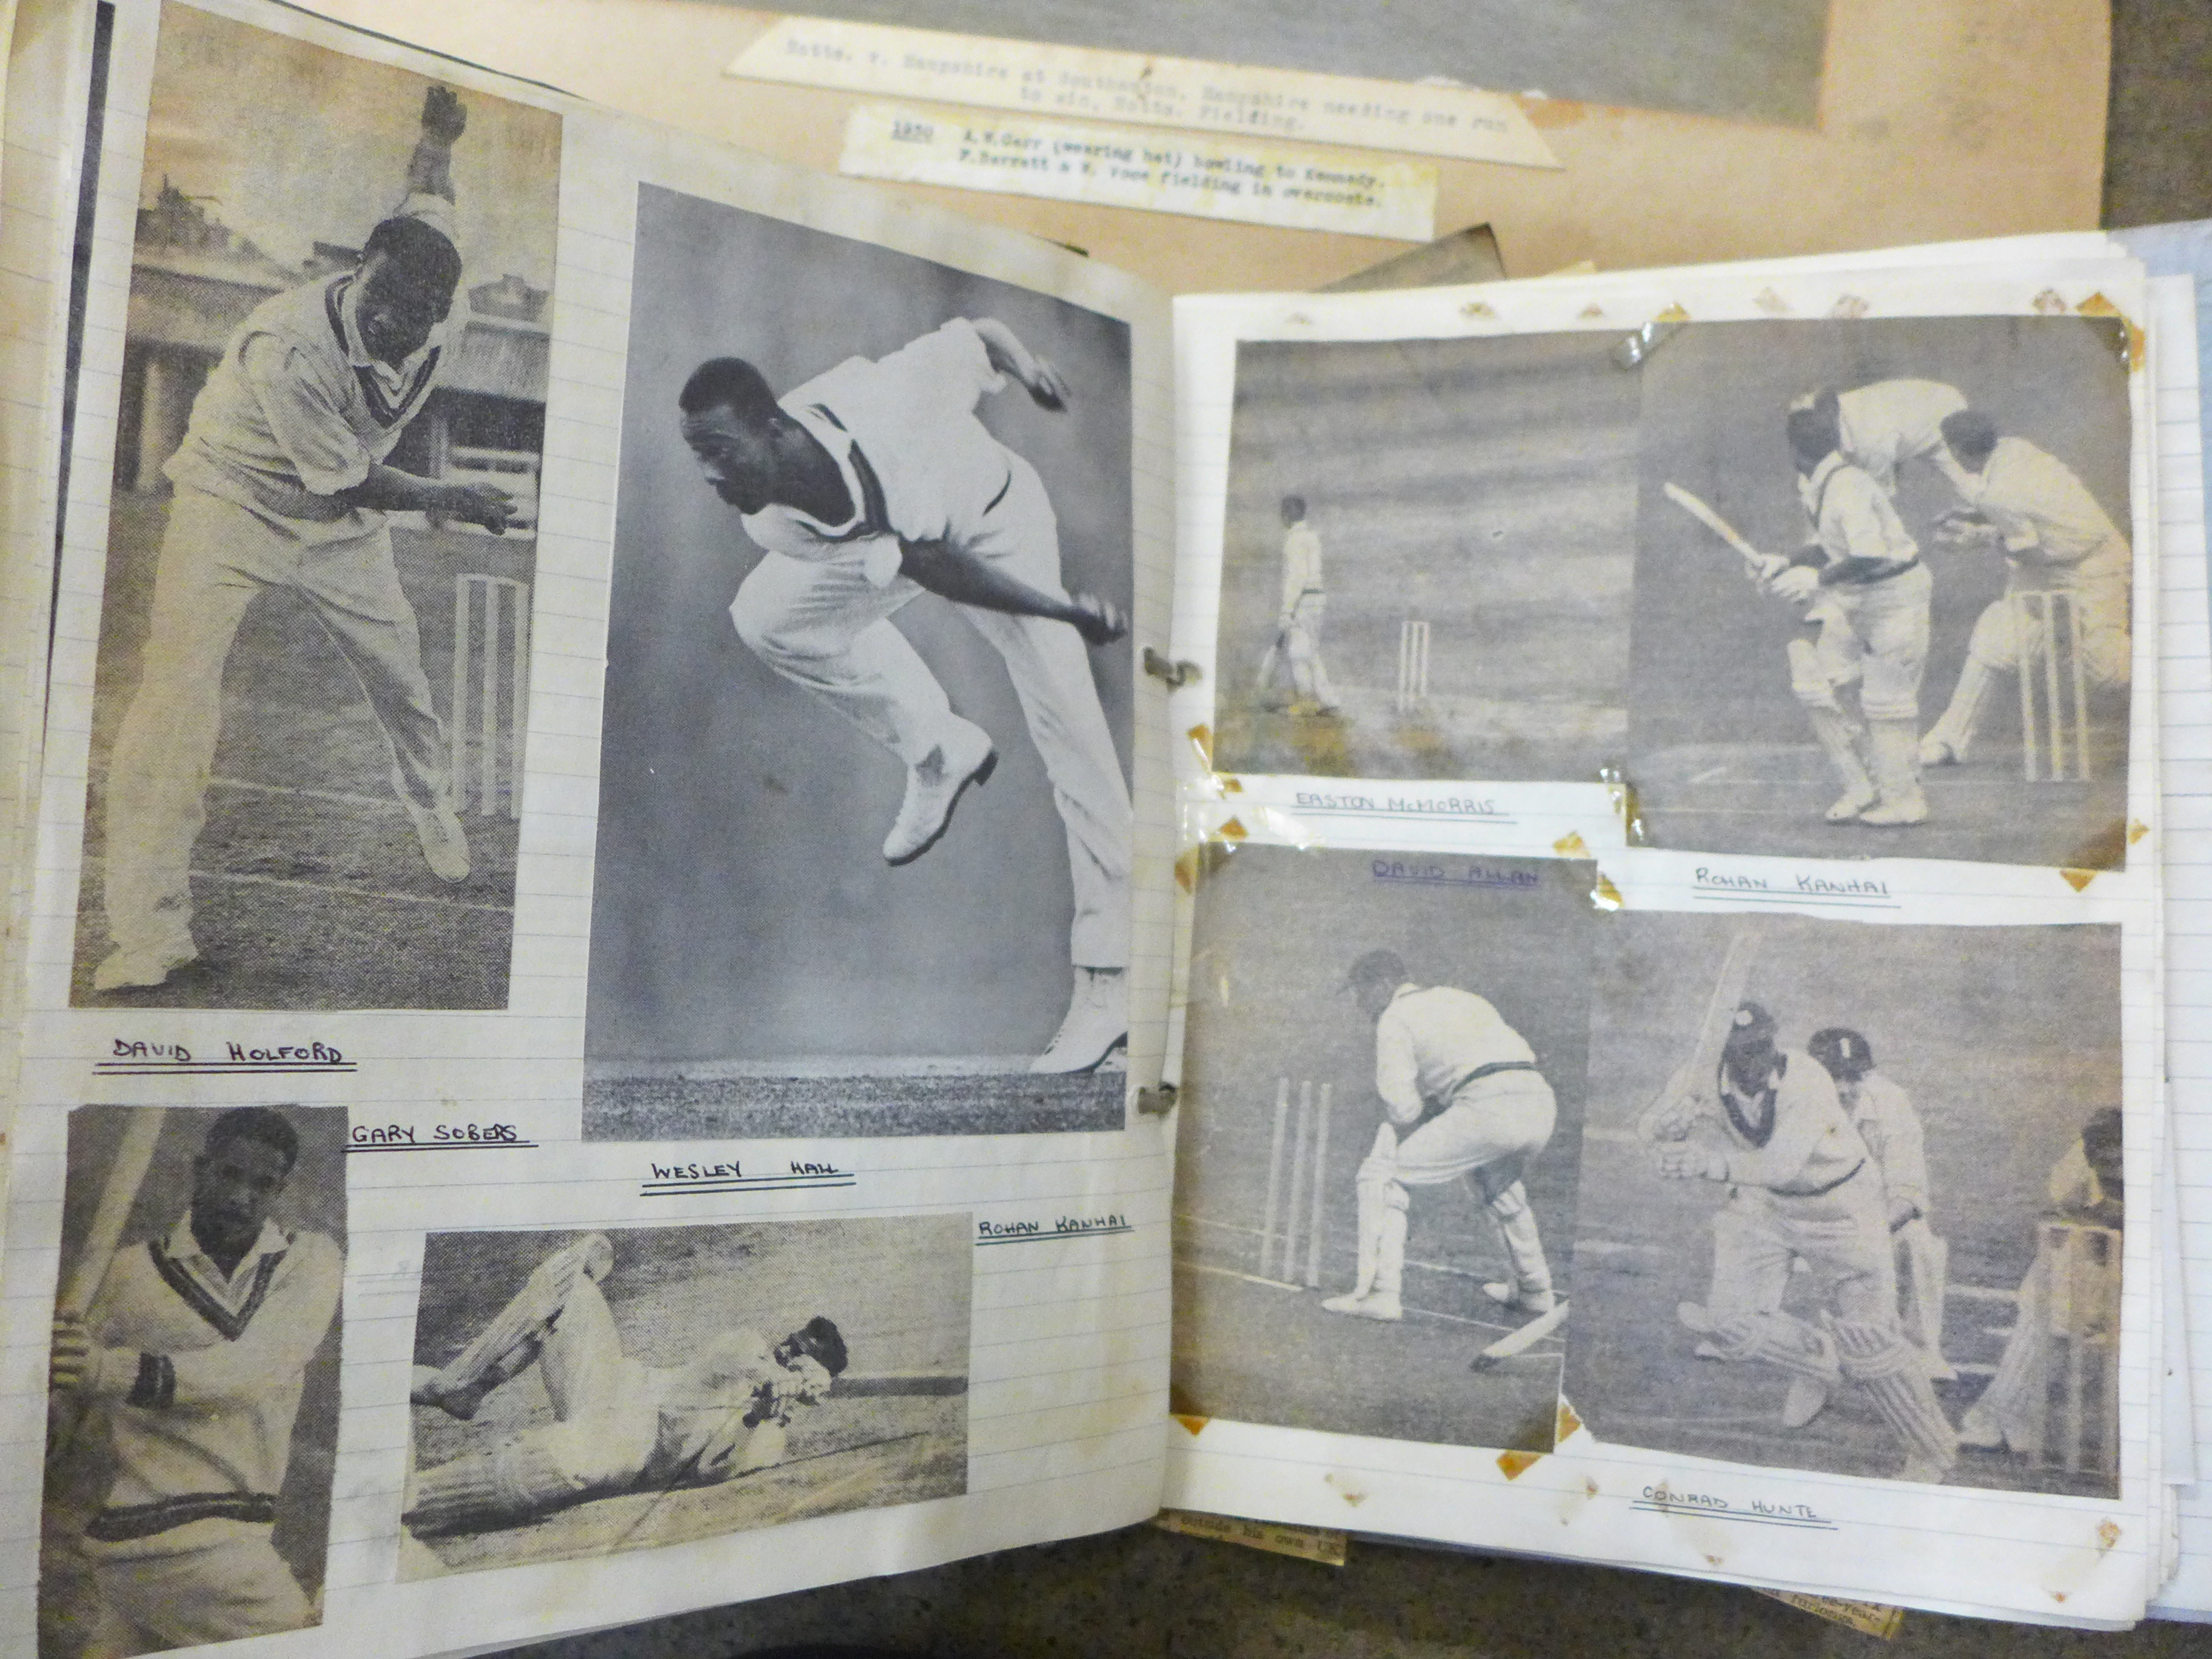 Cricket ephemera and scrap albums with autographs including Larwood, Boycott, Subba Row - Image 11 of 19